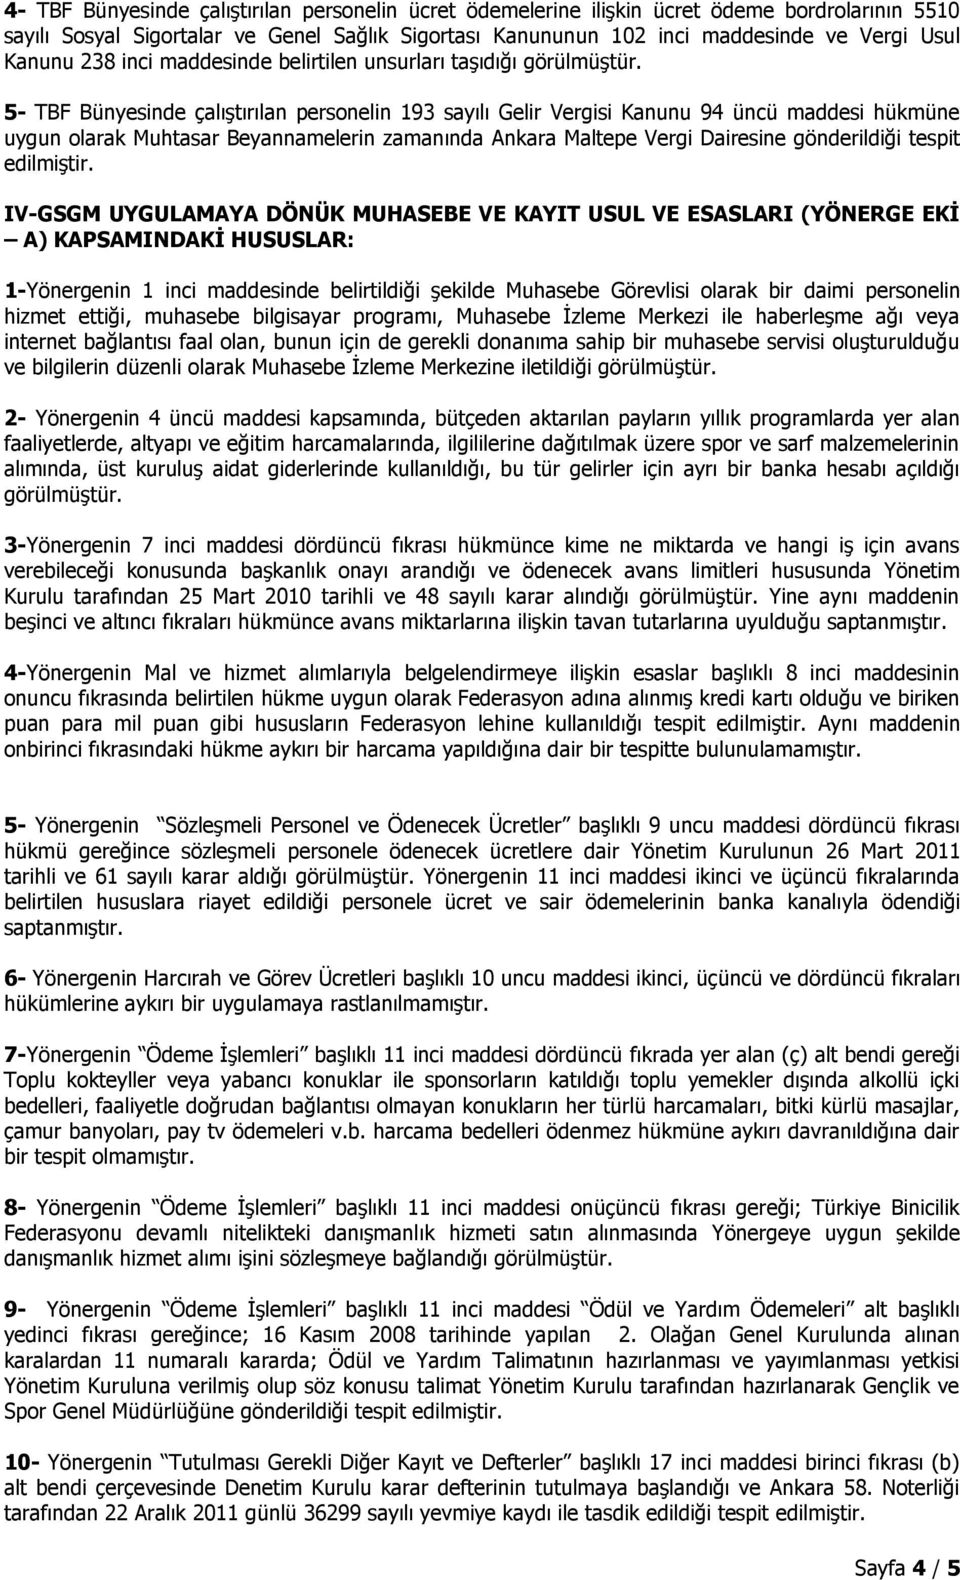 5- TBF Bünyesinde çalıştırılan personelin 193 sayılı Gelir Vergisi Kanunu 94 üncü maddesi hükmüne uygun olarak Muhtasar Beyannamelerin zamanında Ankara Maltepe Vergi Dairesine gönderildiği tespit